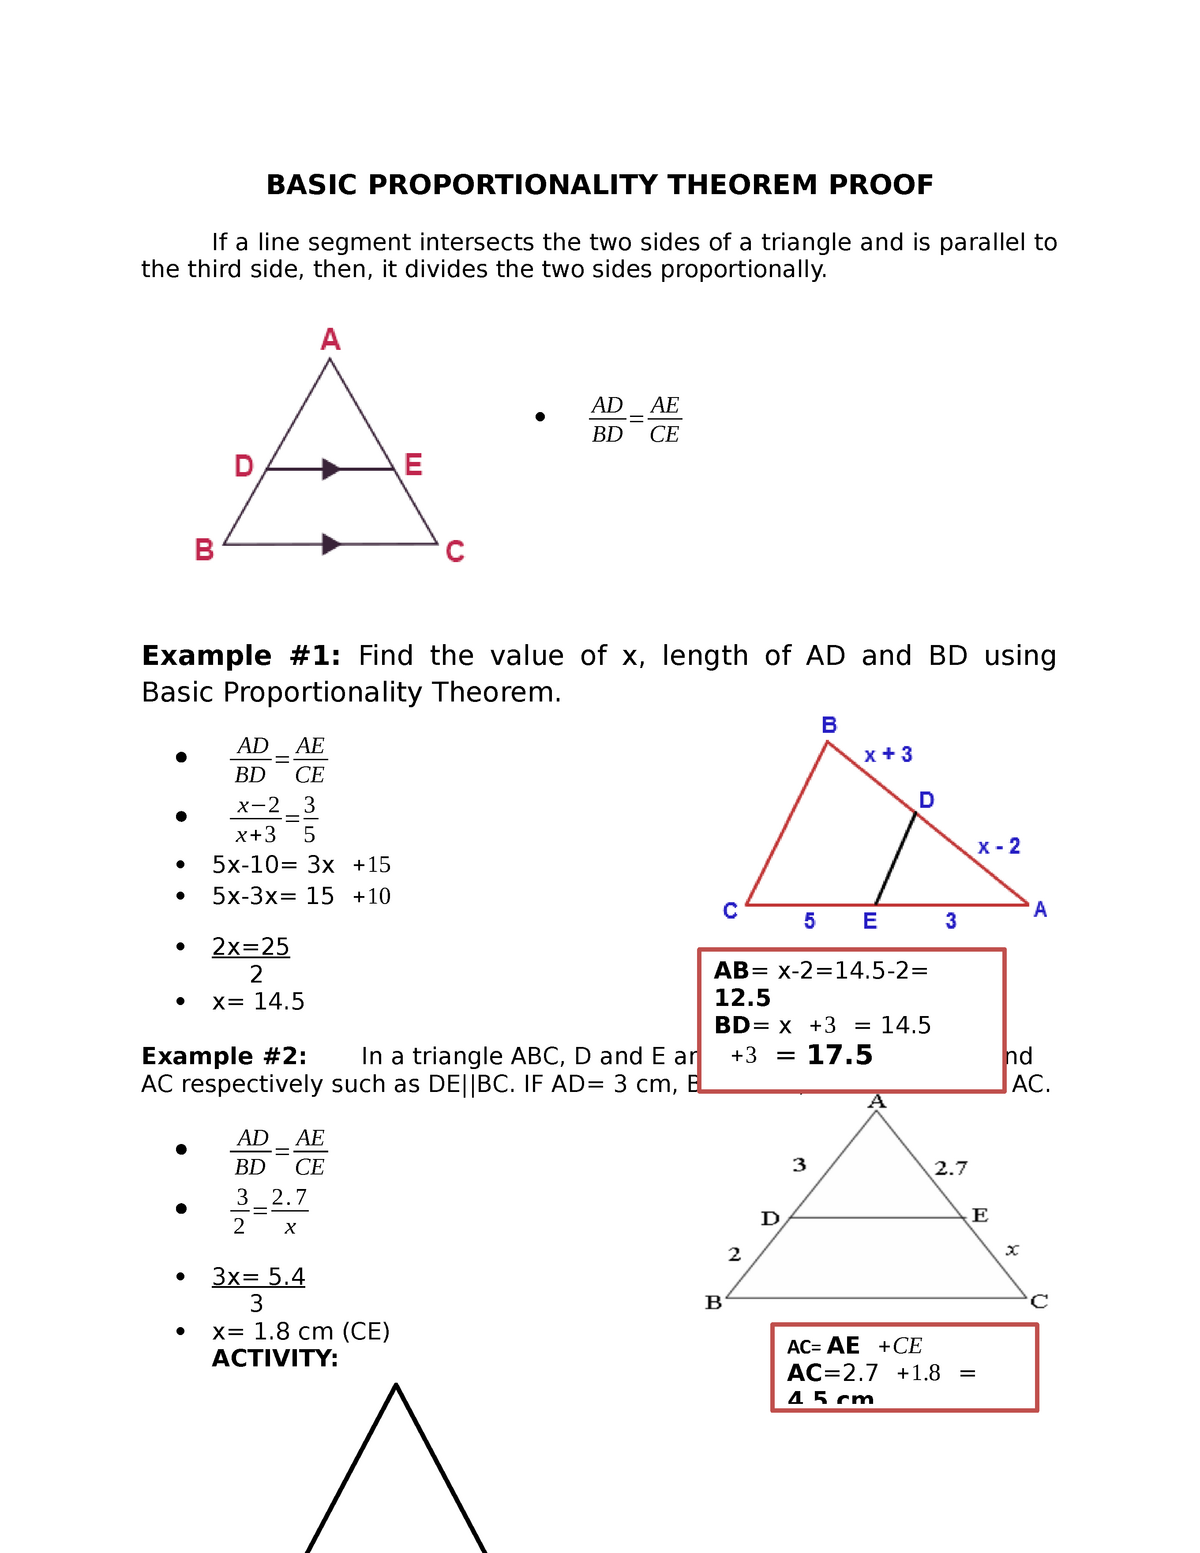 Basic Proportionality Theorem Proof BASIC PROPORTIONALITY THEOREM